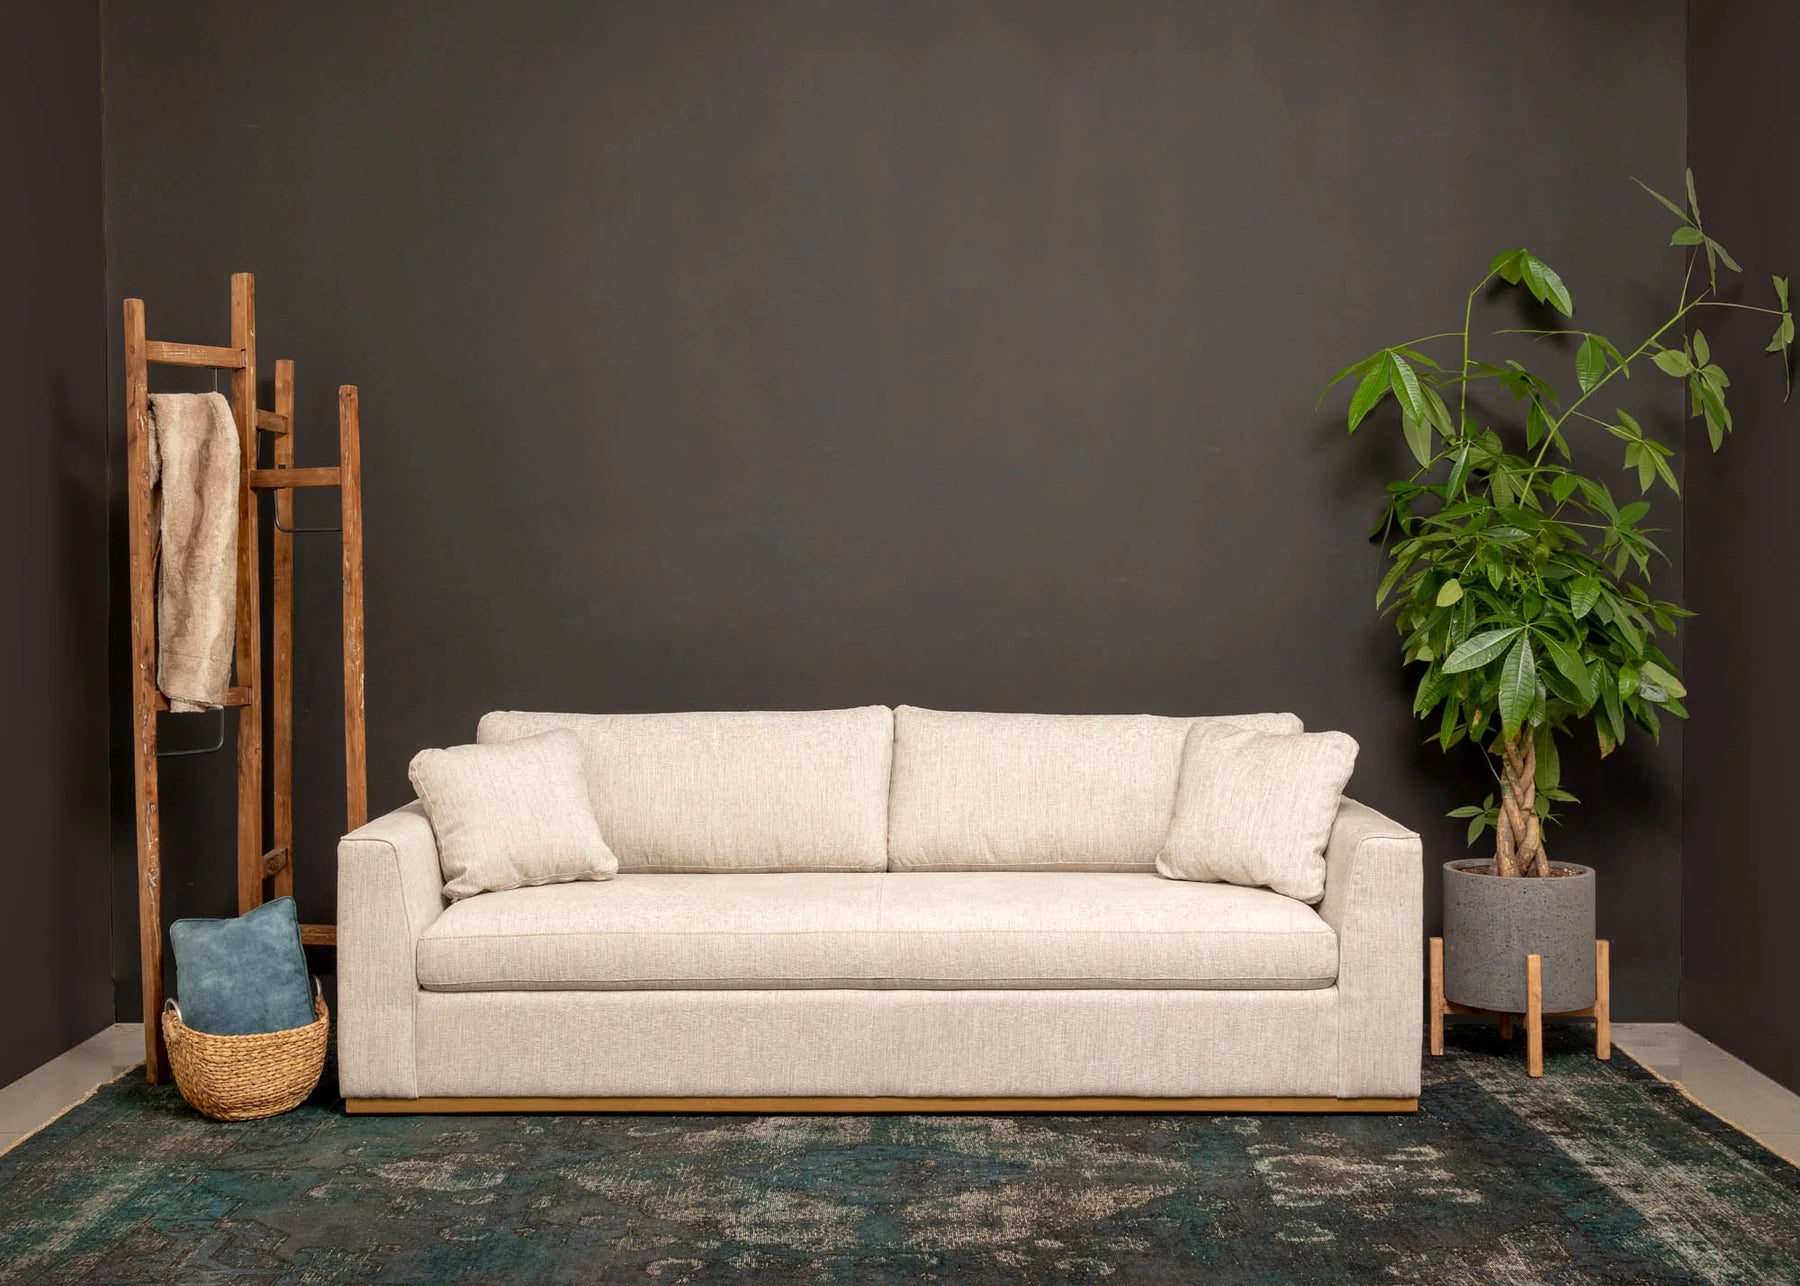 Ander Sofa - Woven Linen